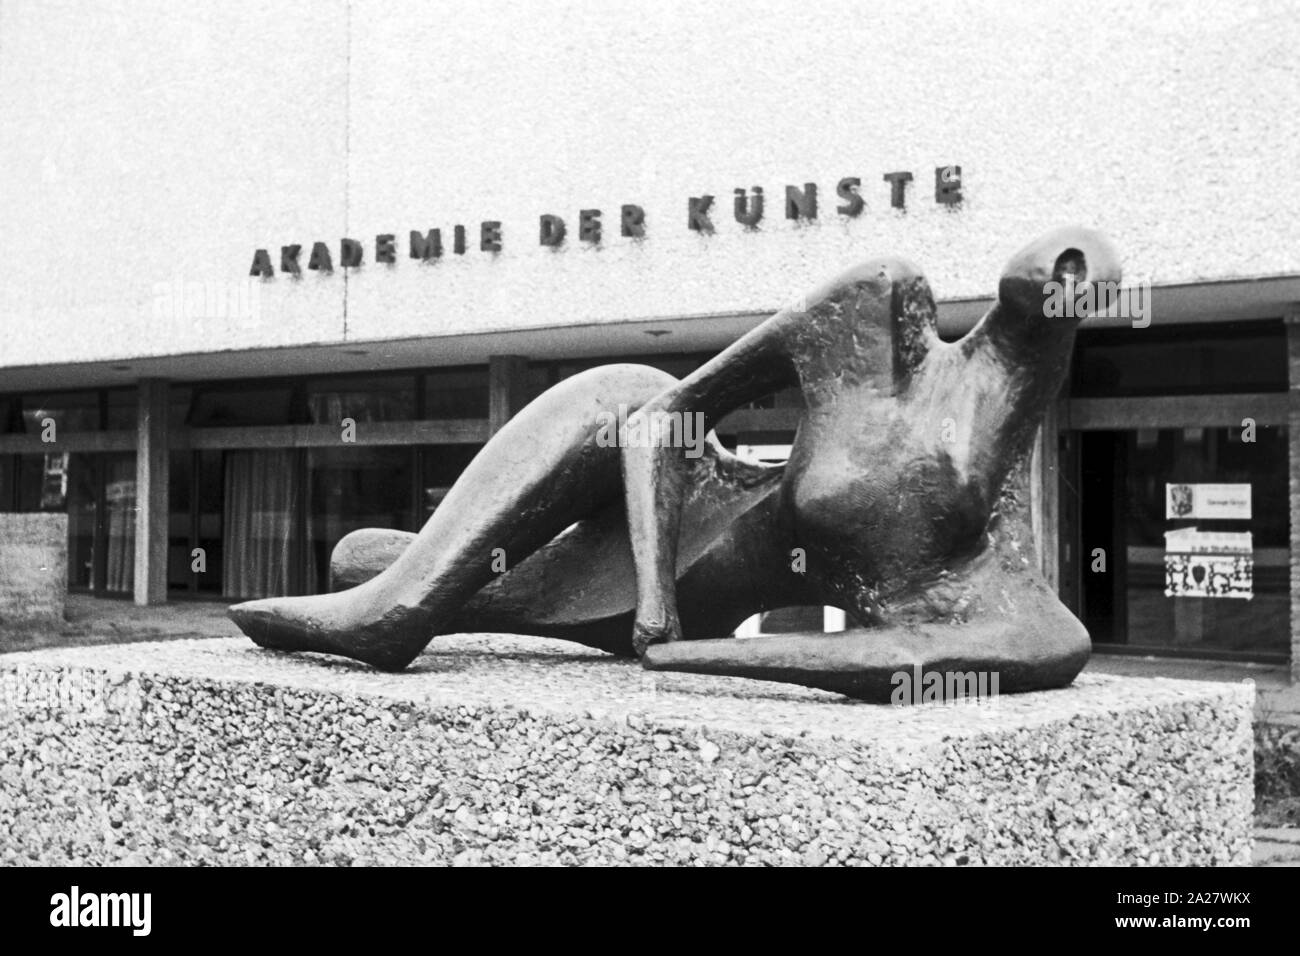 Eingang zur Akademie der Künste im Hanseatenweg mit der Skulptur 'Liegende' von Henry Moore in Berlin, Deutschland 1962. Entrance to the Academy of Art at Hanseatenweg and the scultpure 'Liegende' by Henry Moore at Berlin, Germany 1962. Stock Photo